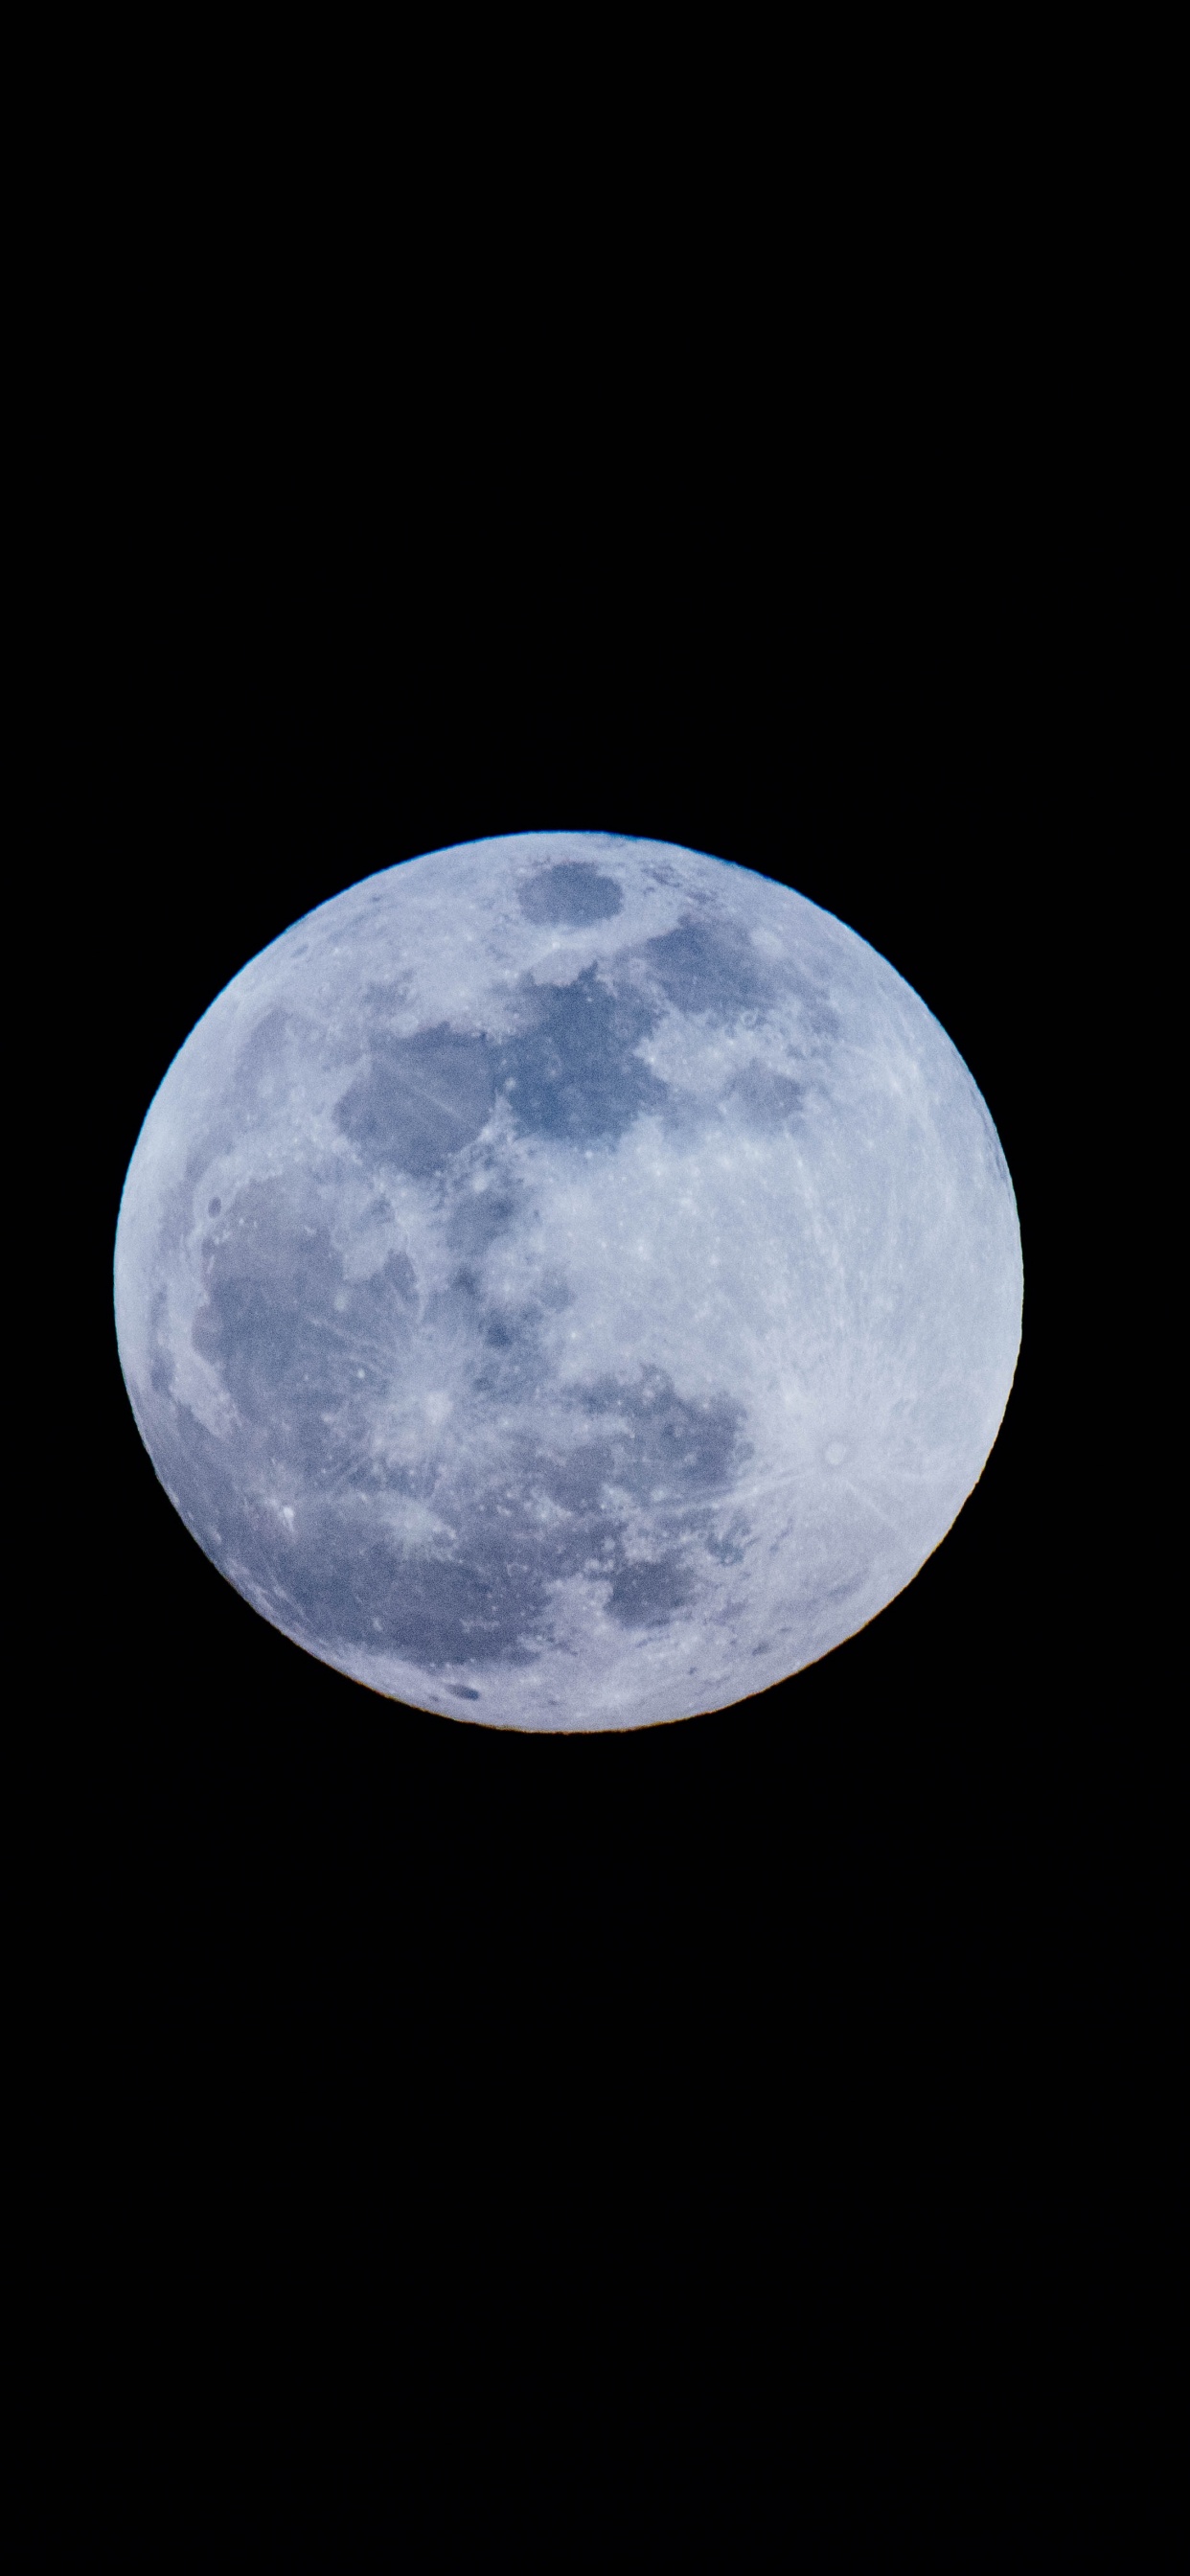 月亮, 满月, 天的事件, 天文学对象, 月光 壁纸 1242x2688 允许